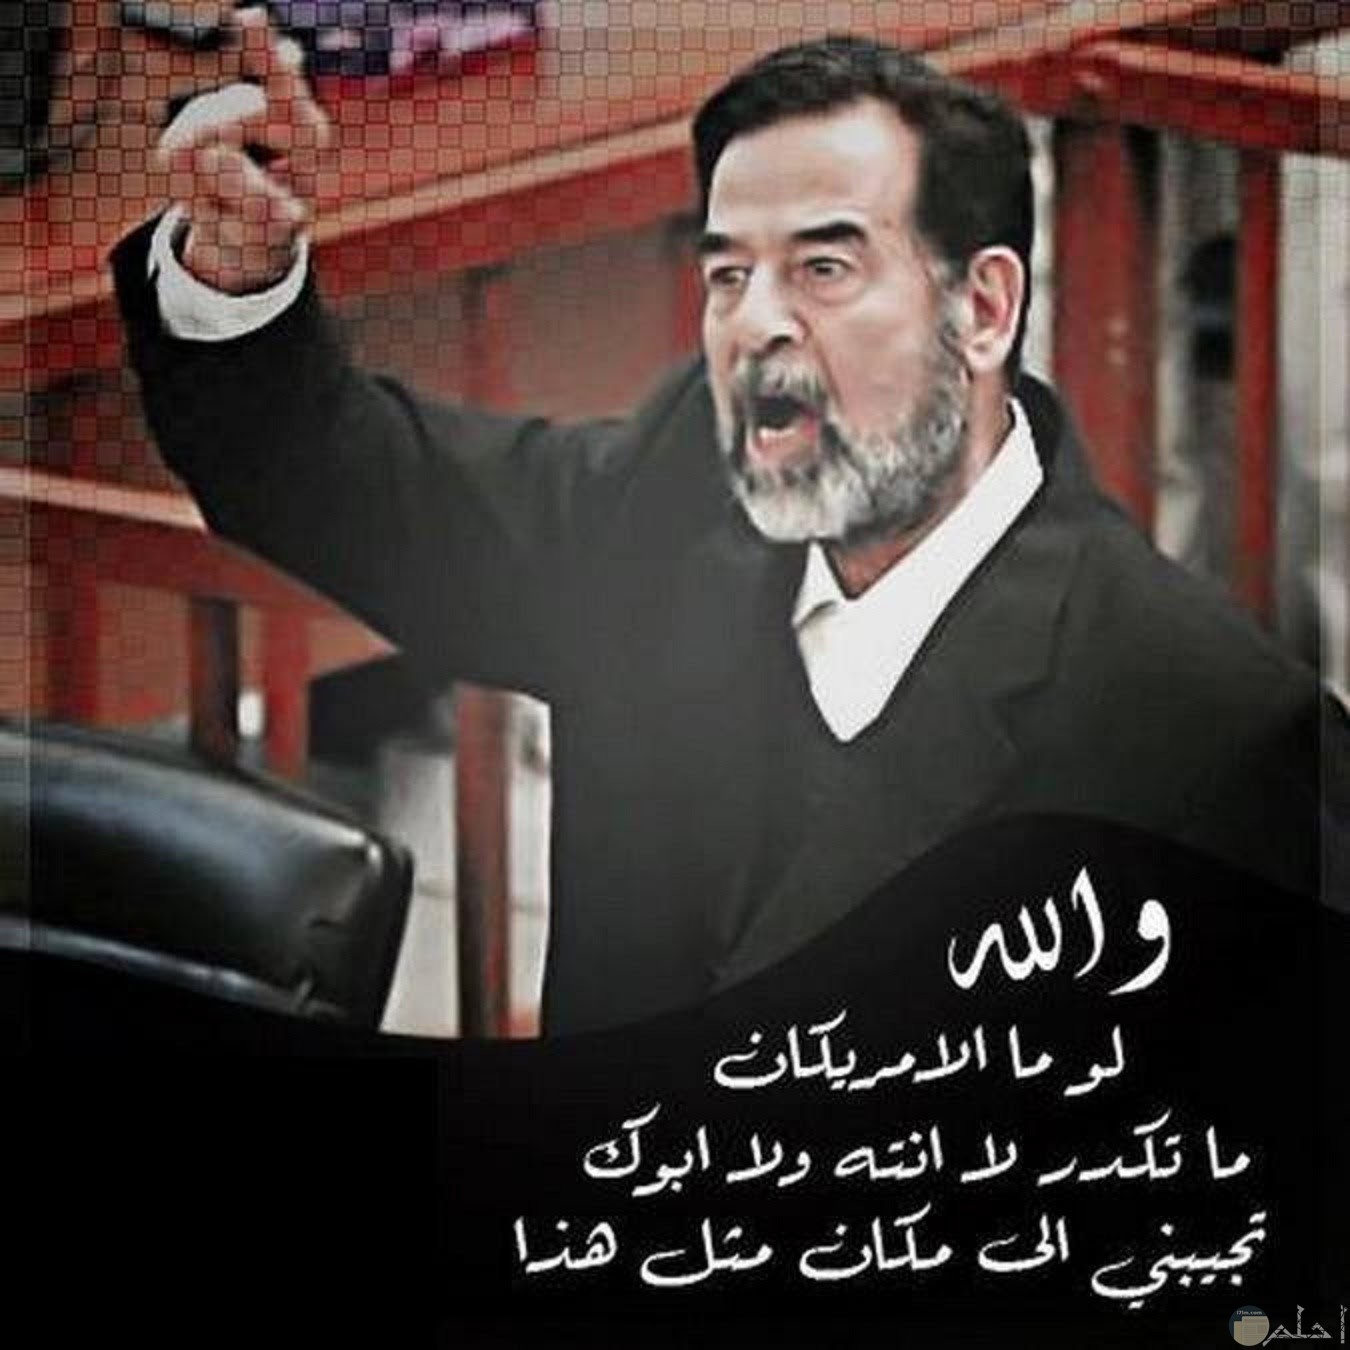 صور عبارات صدام حسين التاريخية وعبارات حب مؤيدة